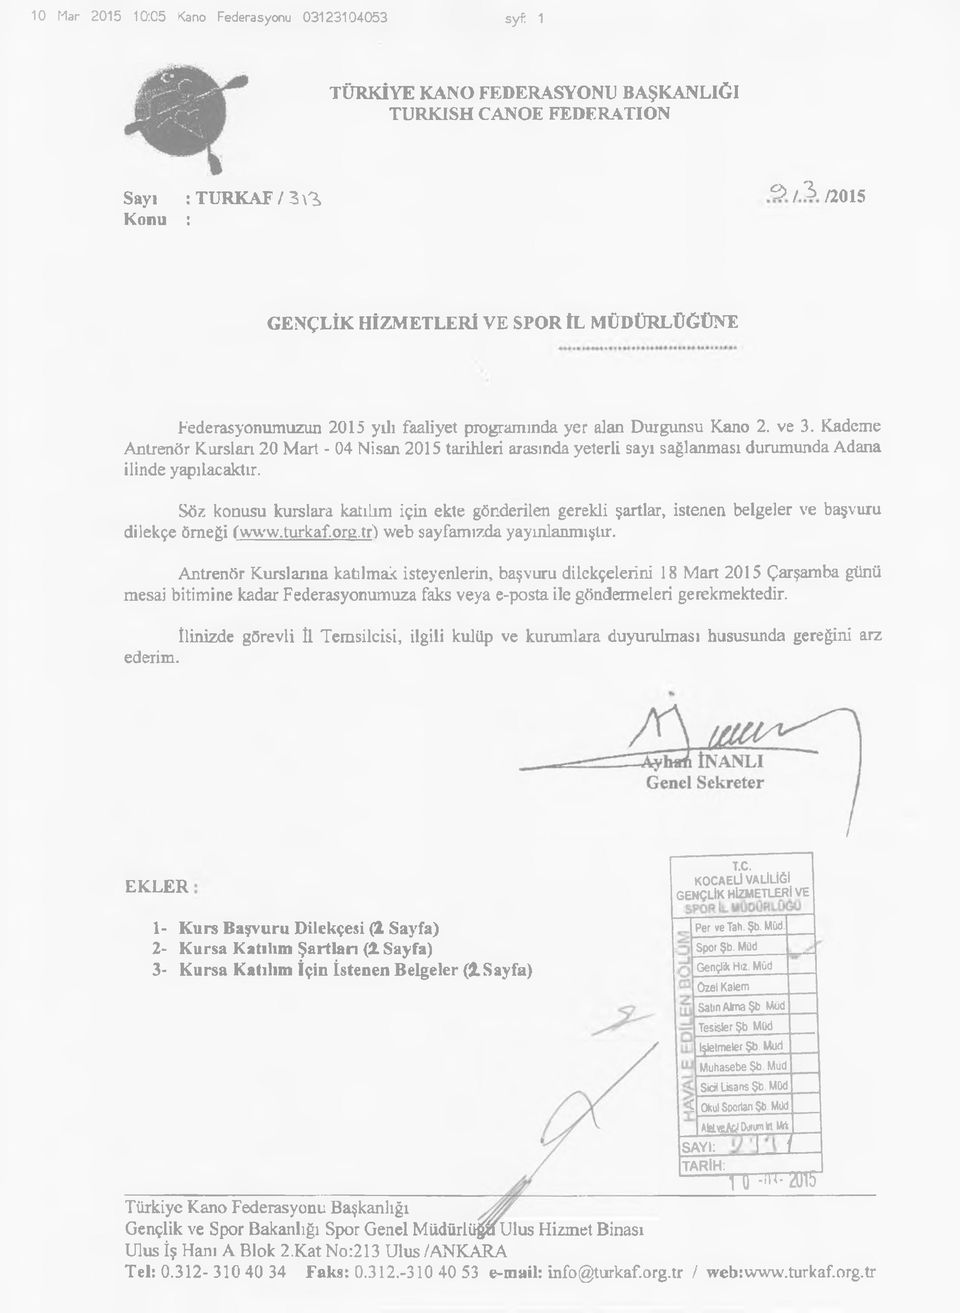 Kademe Antrenör Kursları 20 Mart - 04 Nisan 2015 tarihleri arasında yeterli sayı sağlanması durumunda Adana ilinde yapılacaktır.